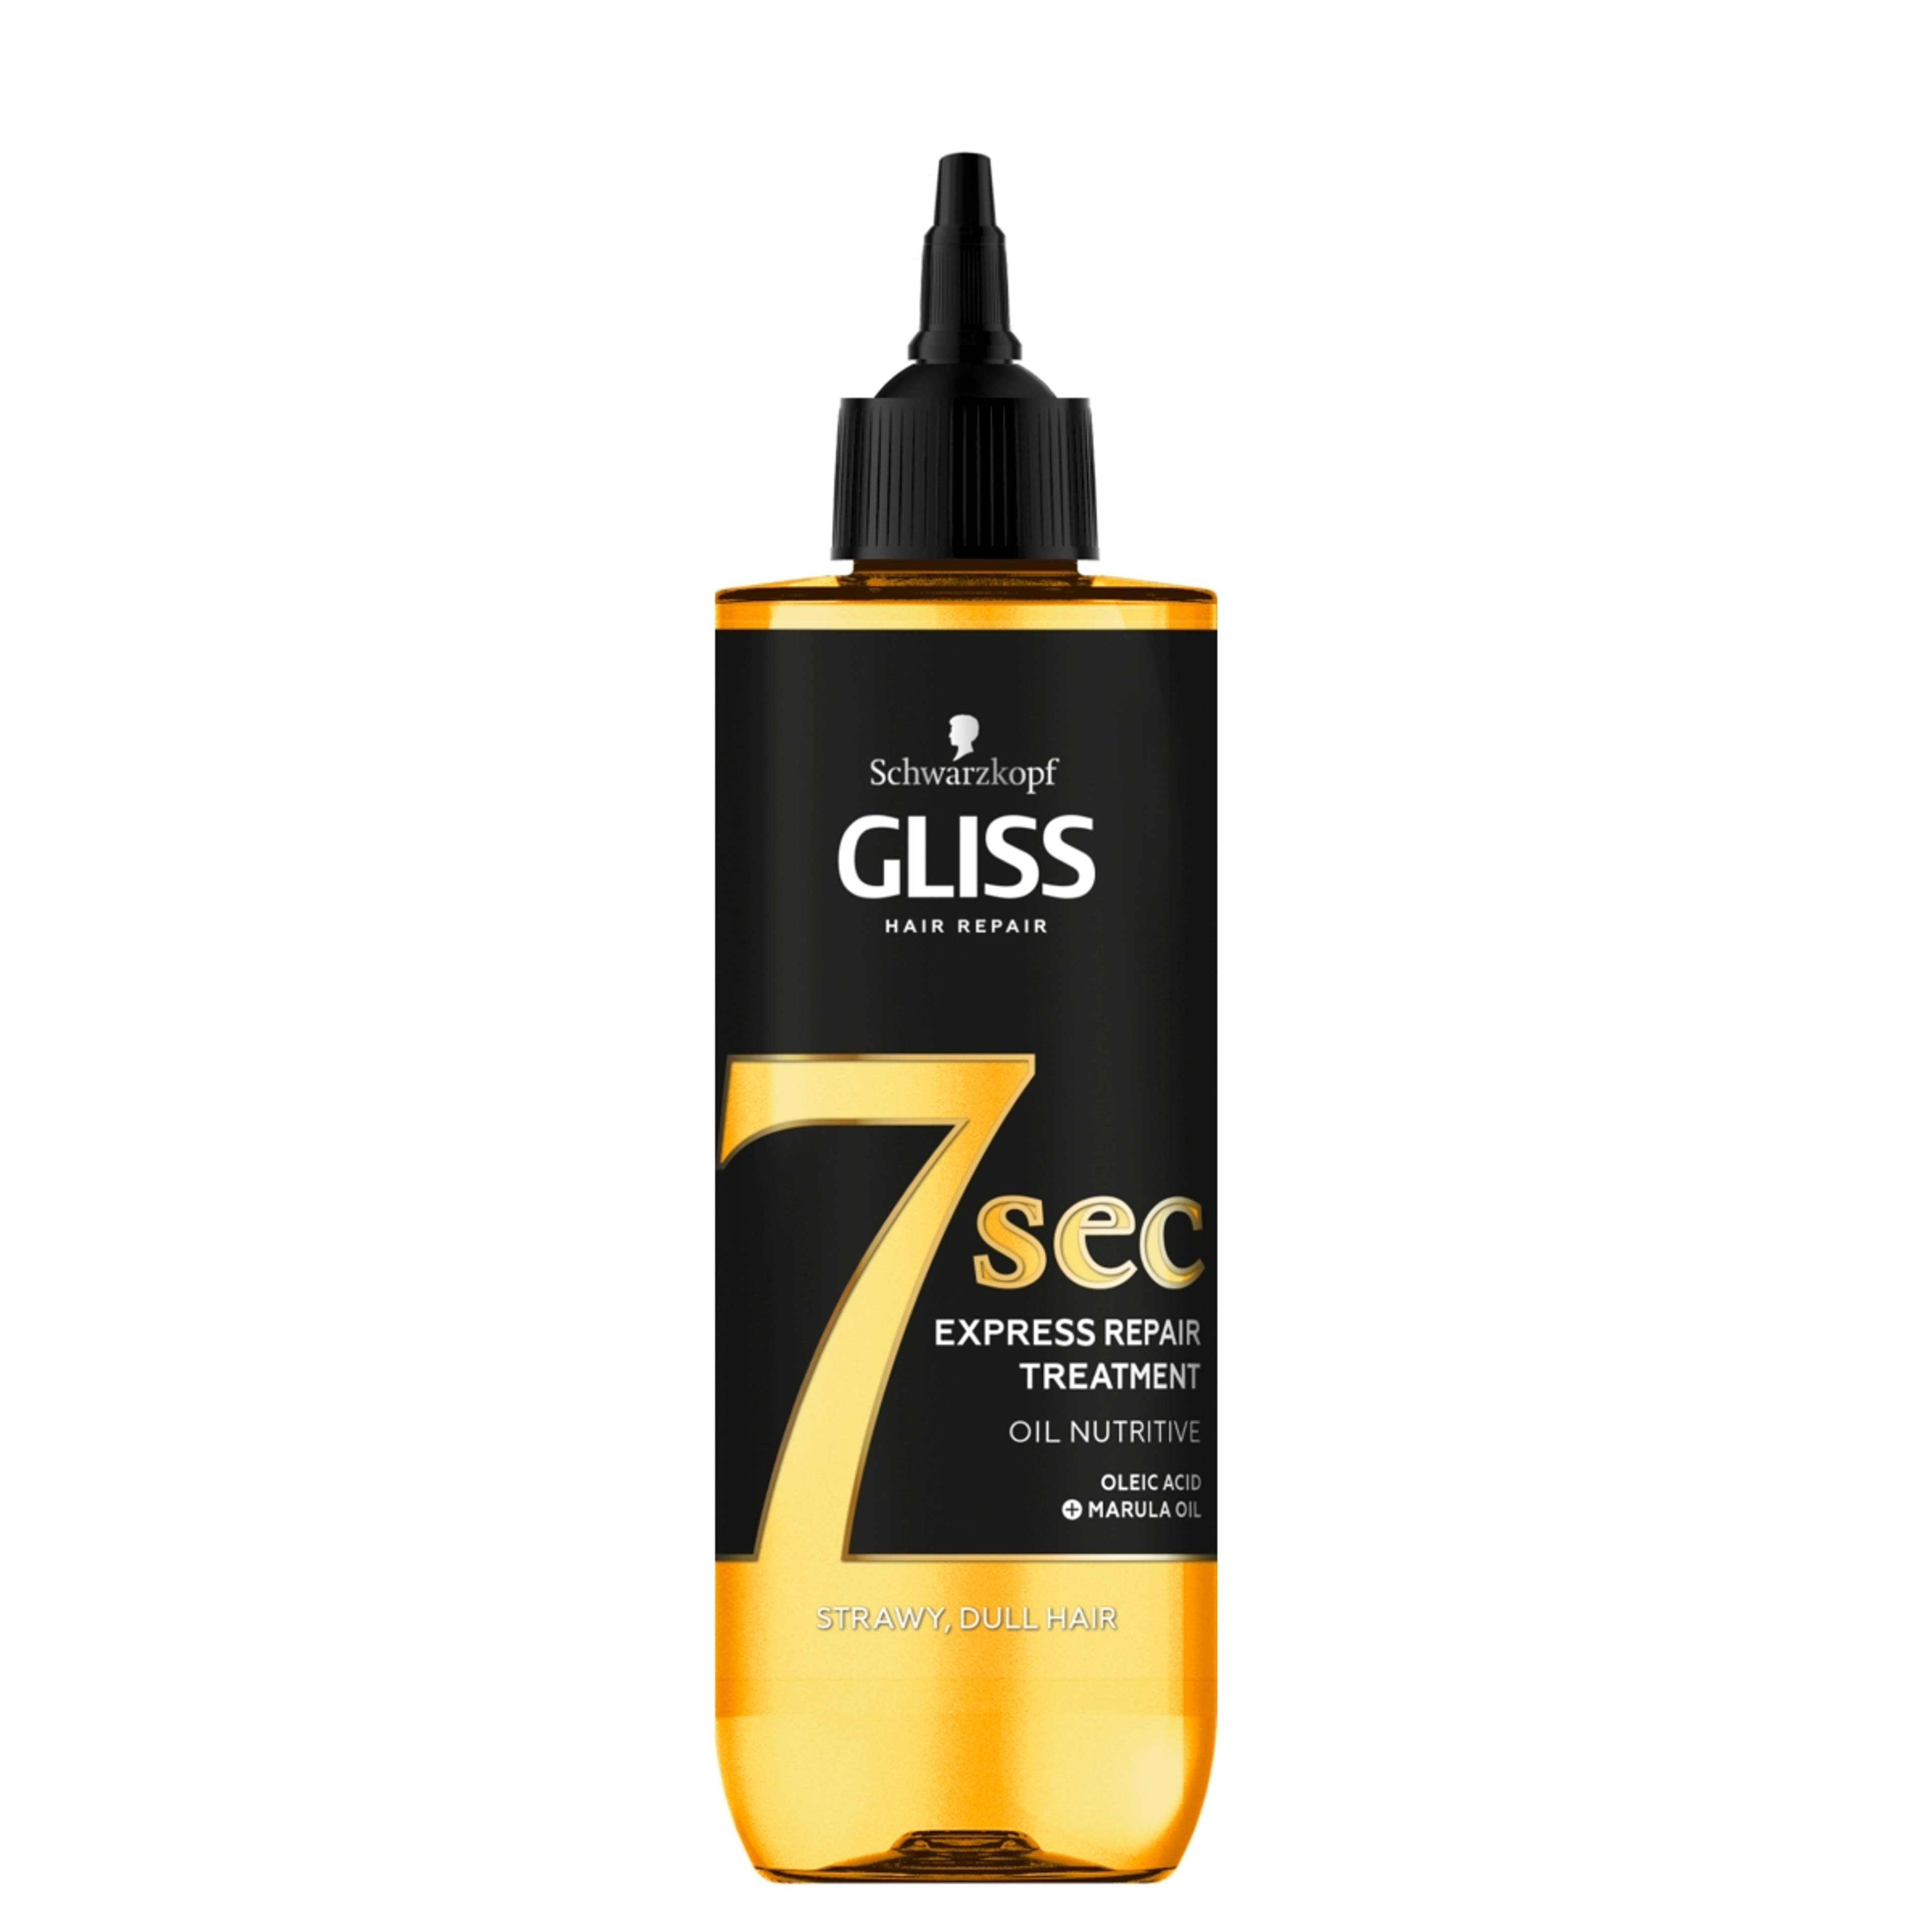 Gliss Express Repair hajpakolás 7sec tápláló olaj - 200 ml-1